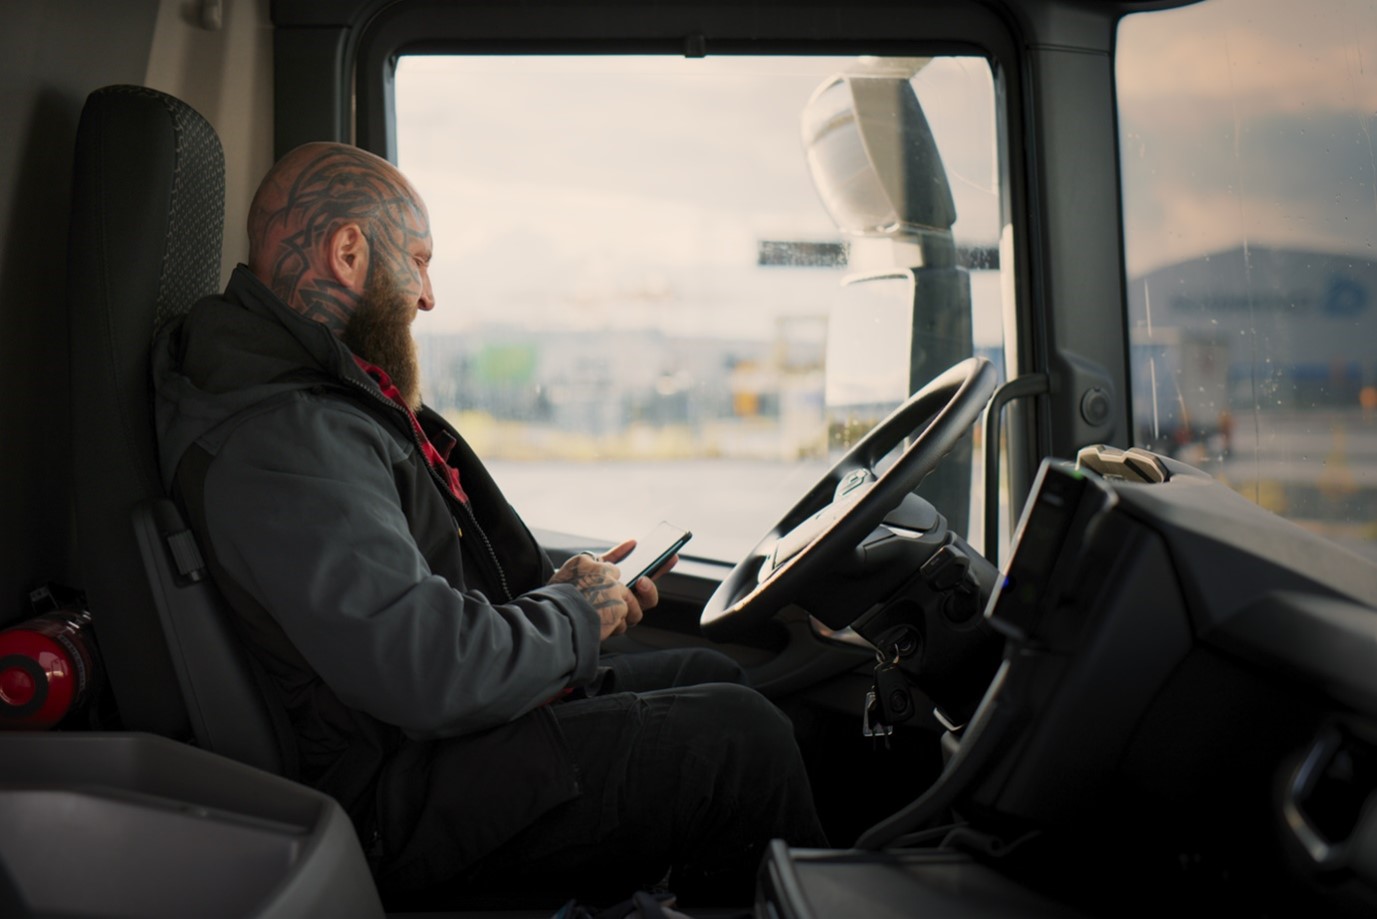 Mies istuu rekka-auton ratissa puhelinta kädessään pidellen.